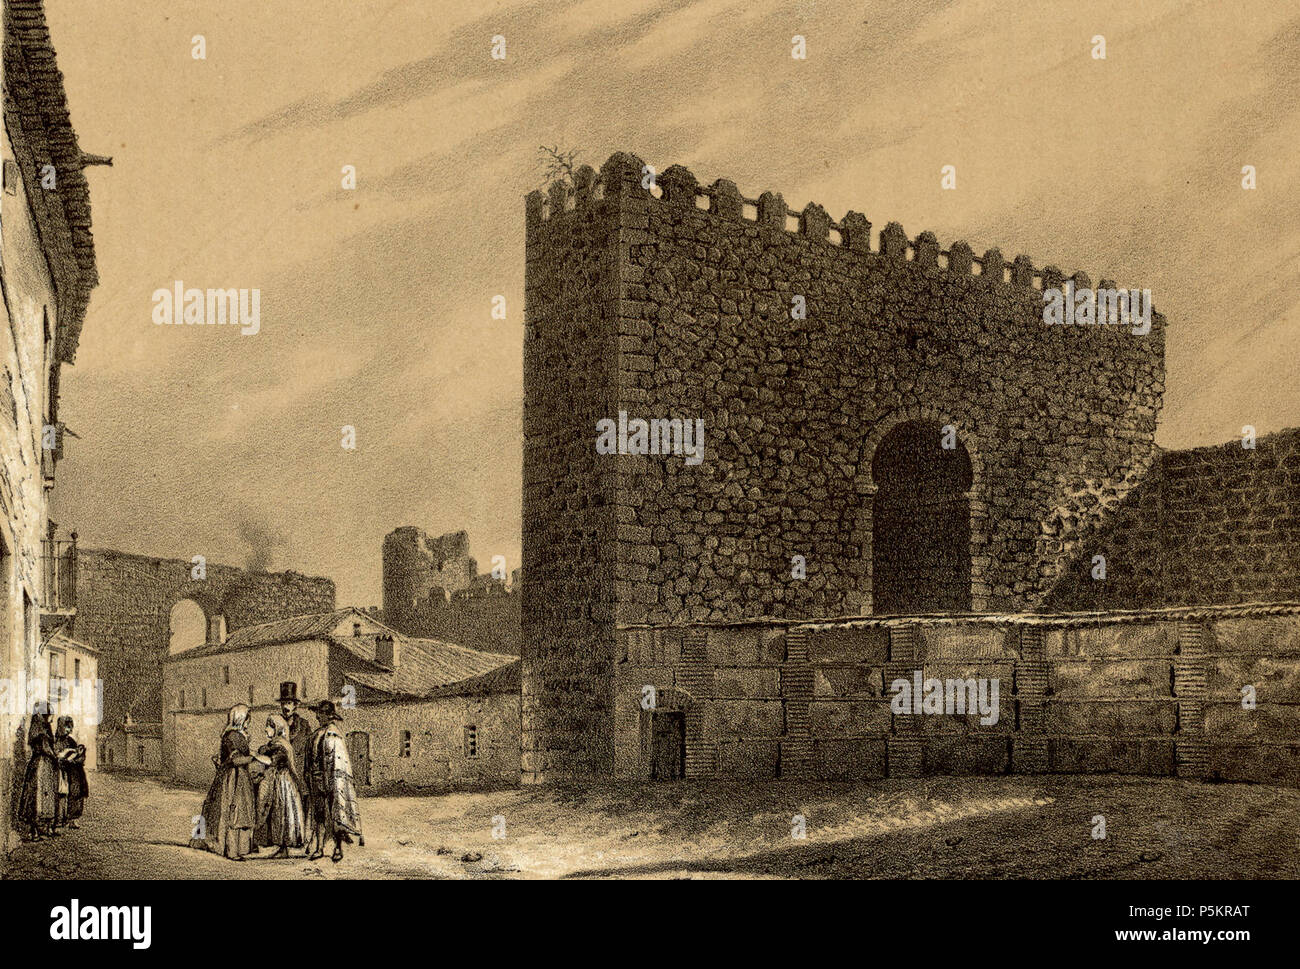 1853, Recuerdos y bellezas de España, Castilla la Nueva, tomo II, Talavera de la Reina, restos de la antigua fortificación (cropped). Stock Photo